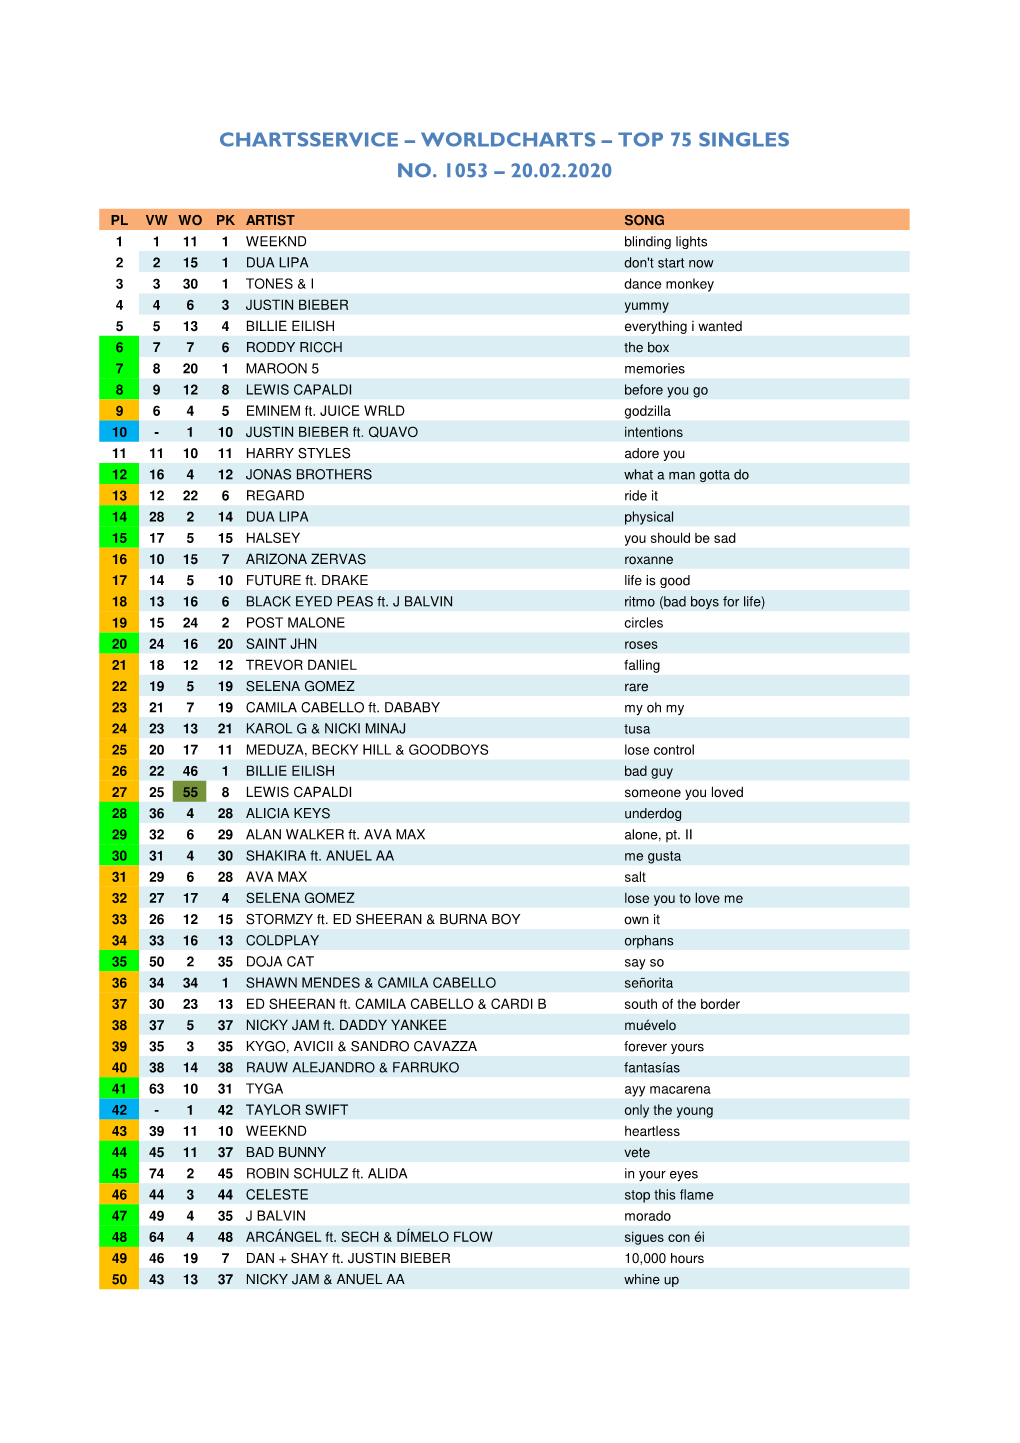 Worldcharts TOP 75 + Album TOP 30 Vom 20.02.2020